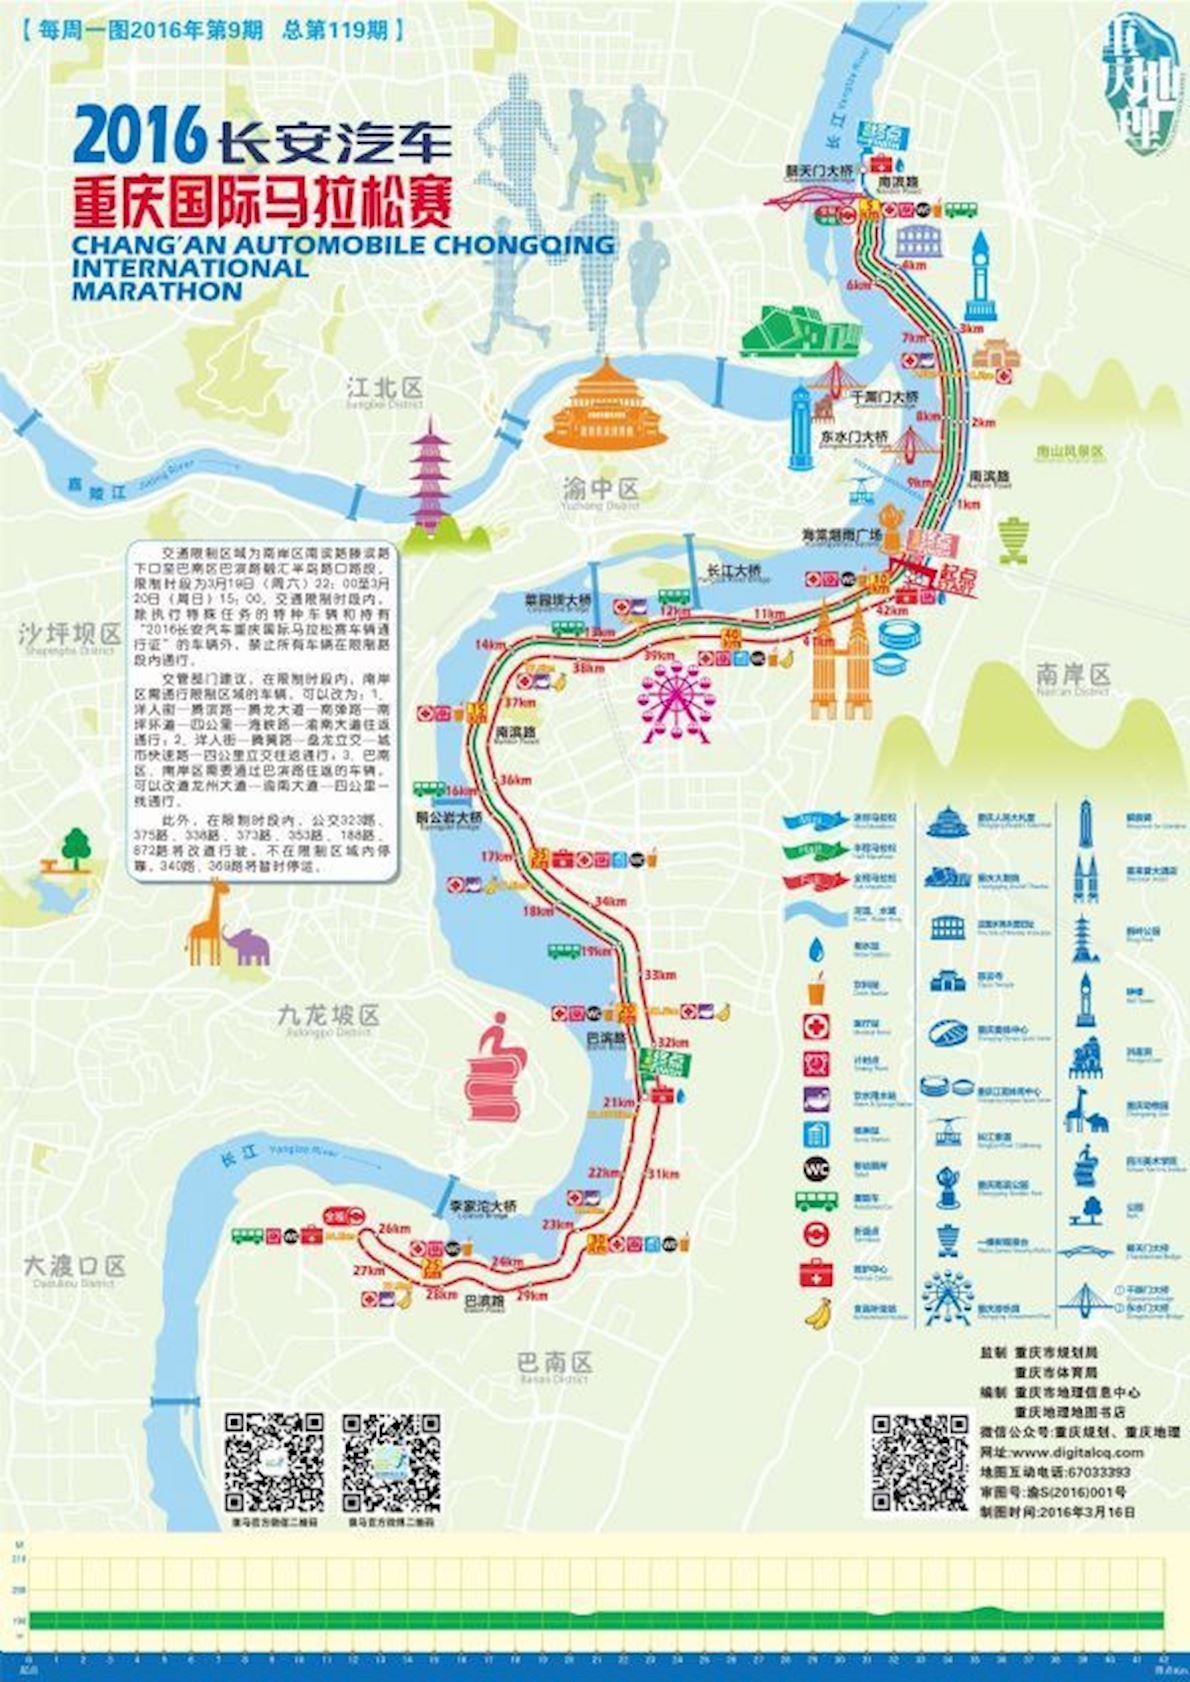 Chongqing International Marathon ITINERAIRE